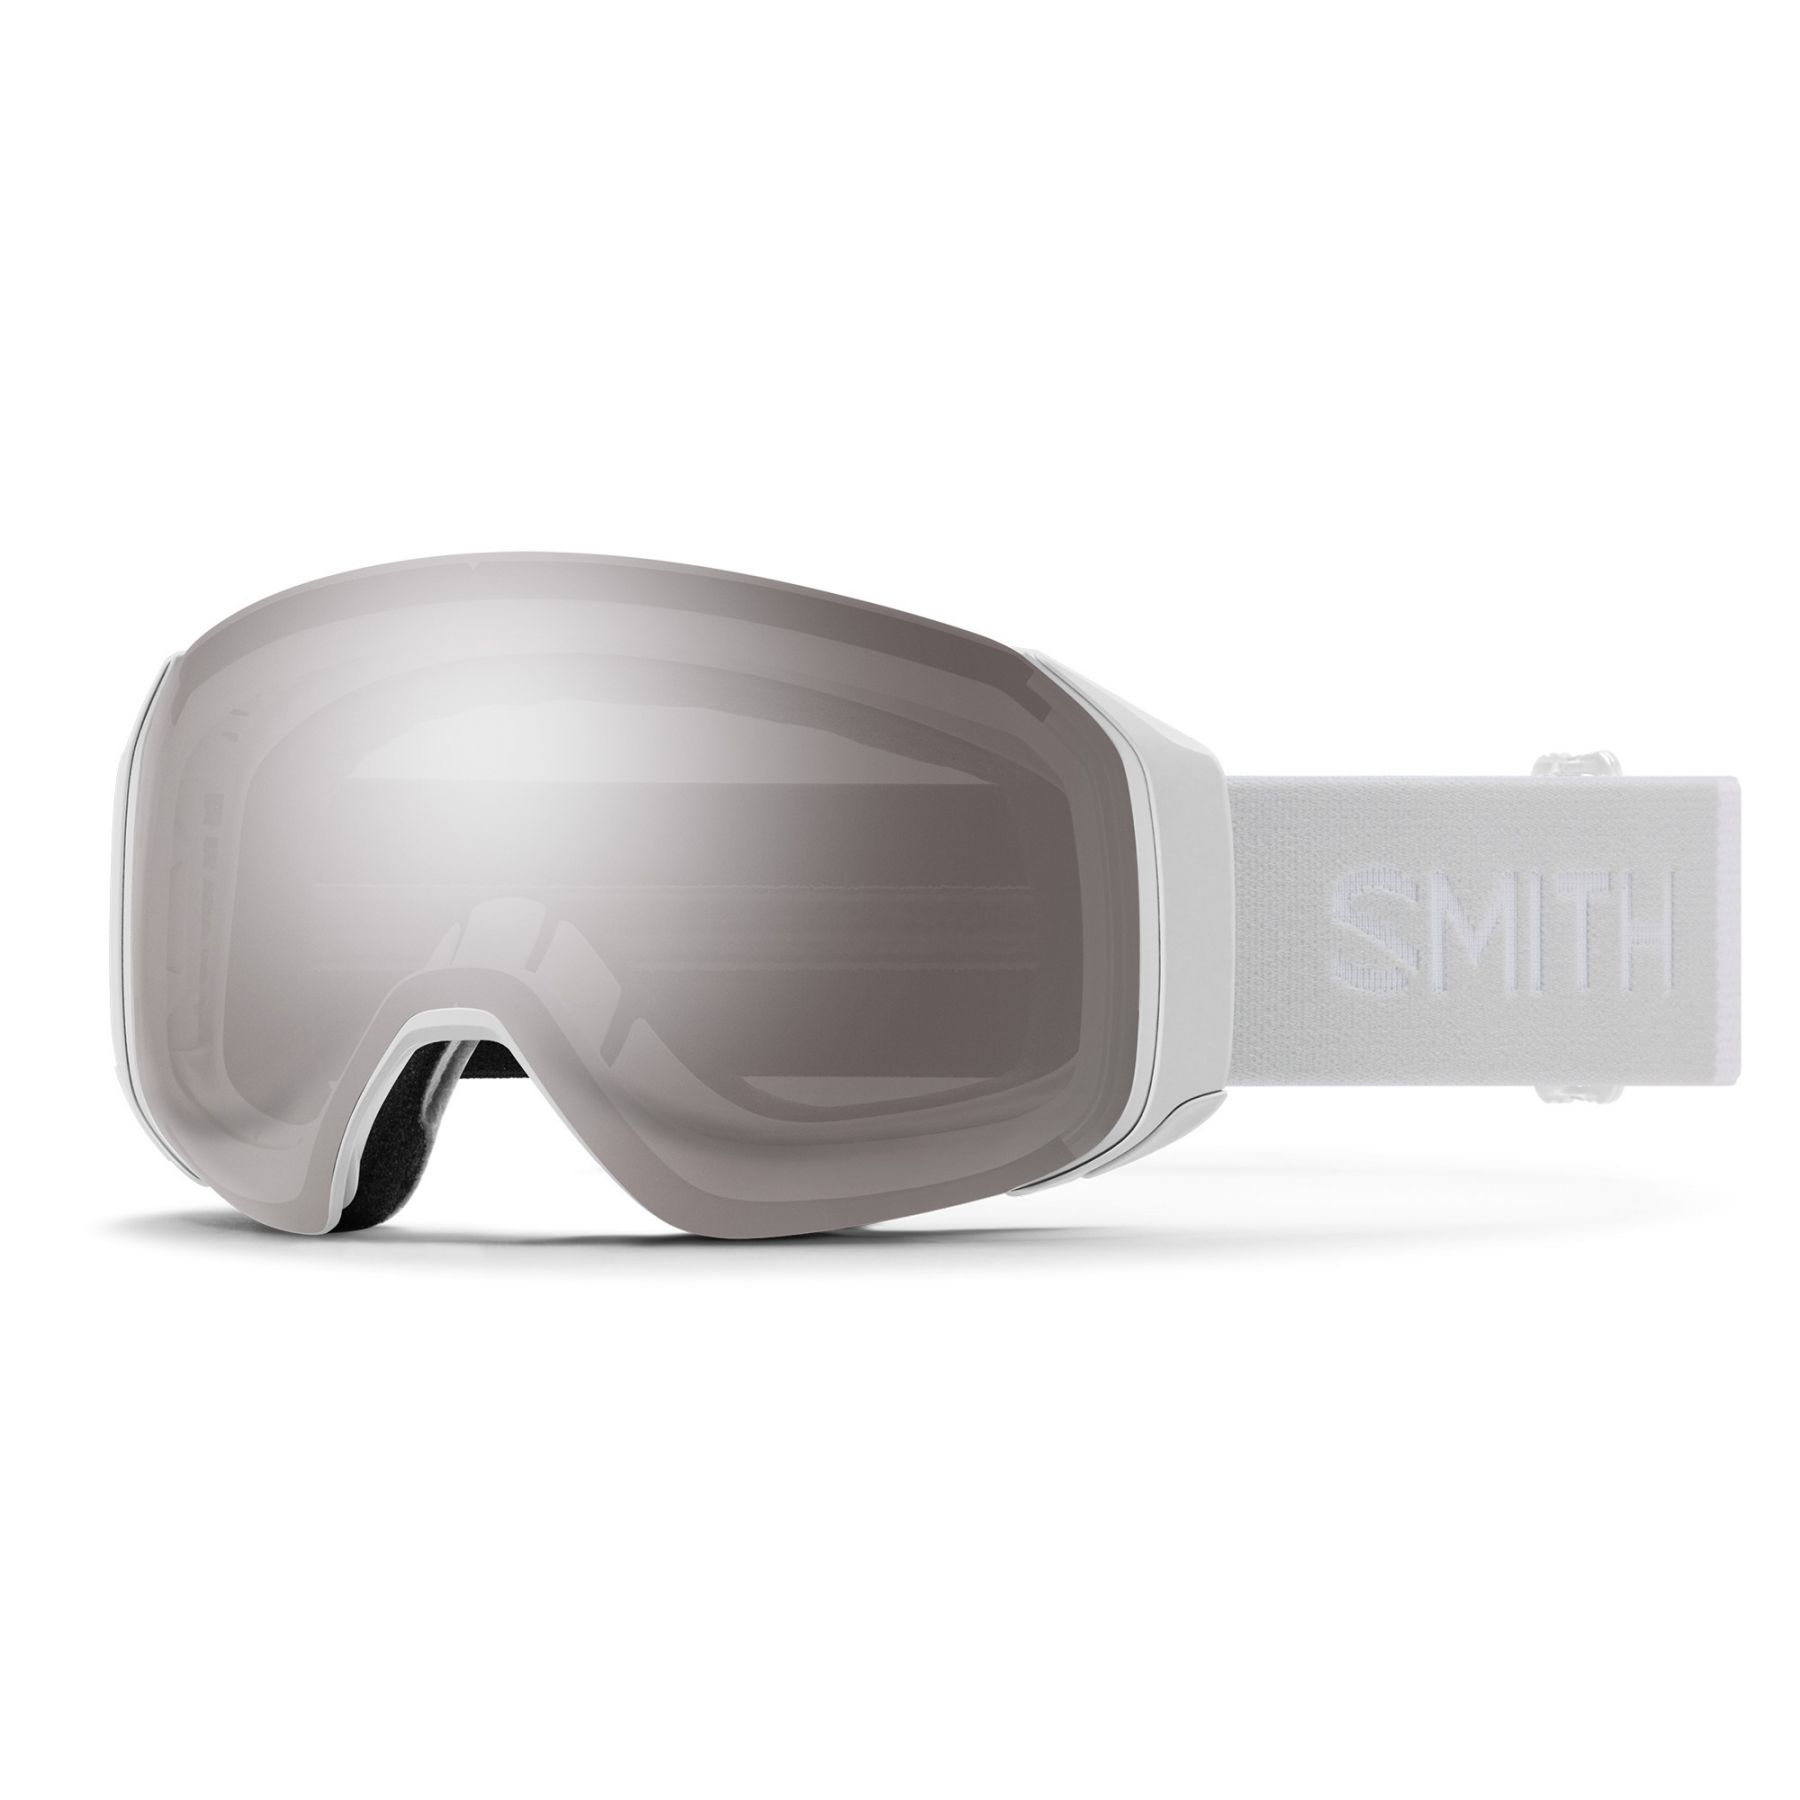 Billede af Smith 4D MAG S, skibrille, hvid